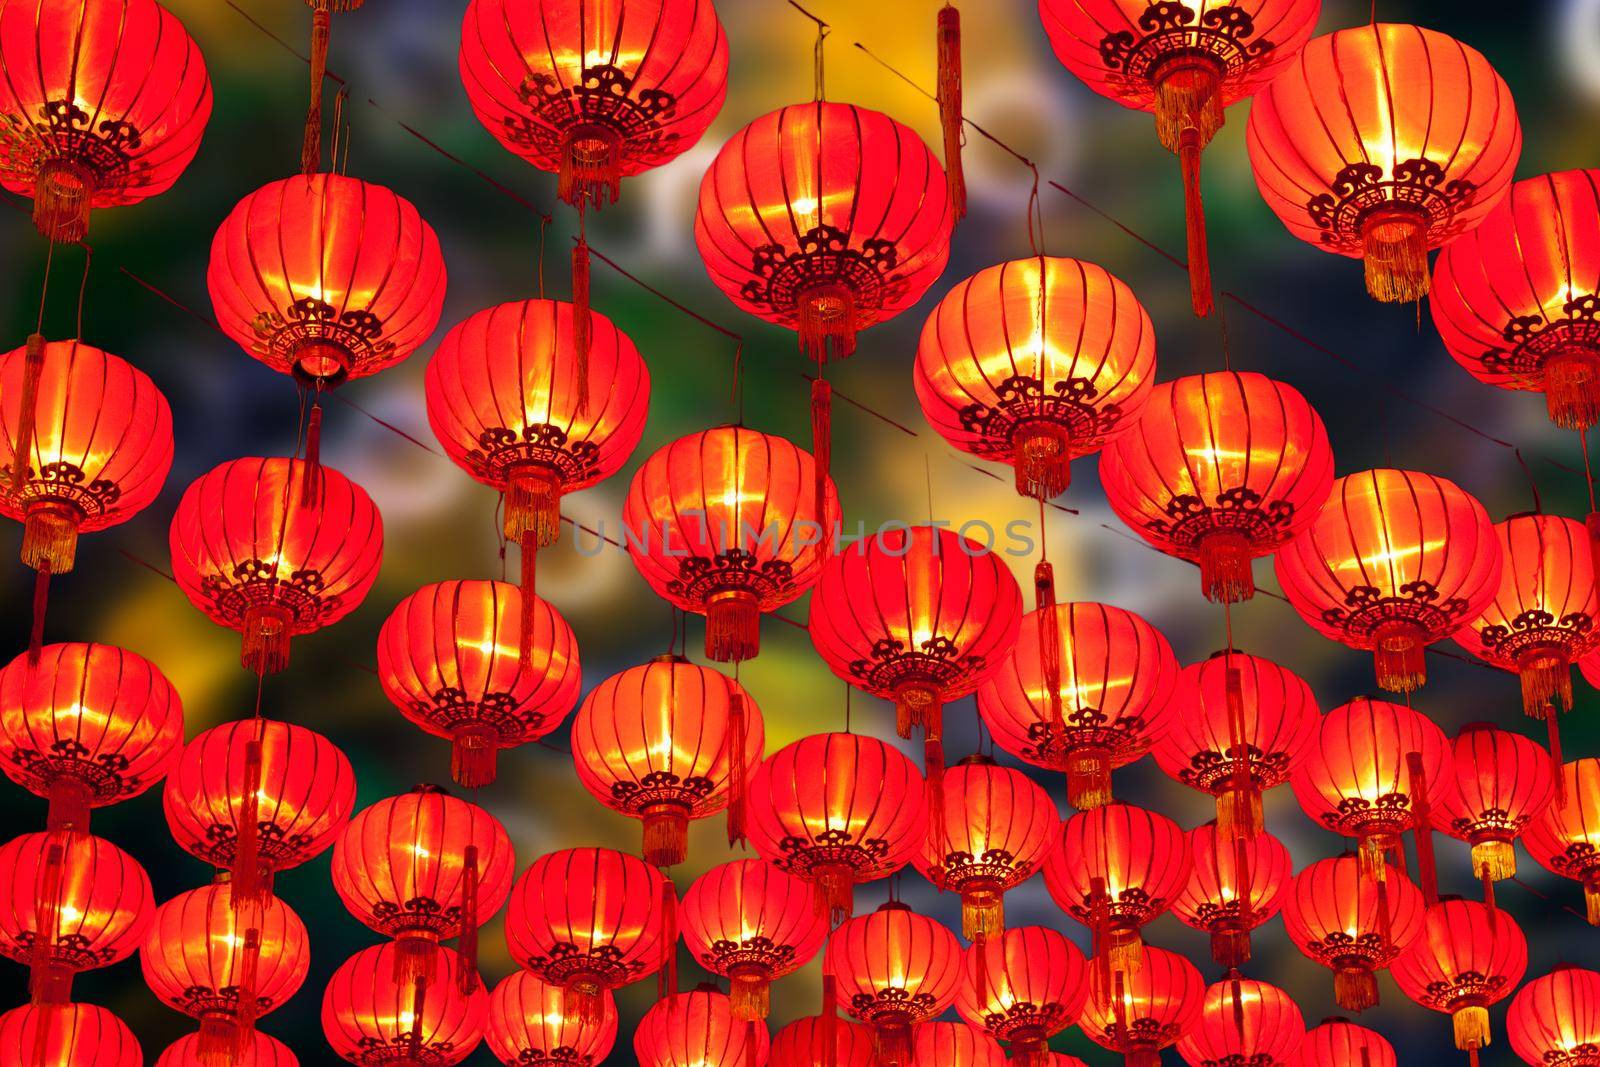 Chinese lanterns in Chinatown.